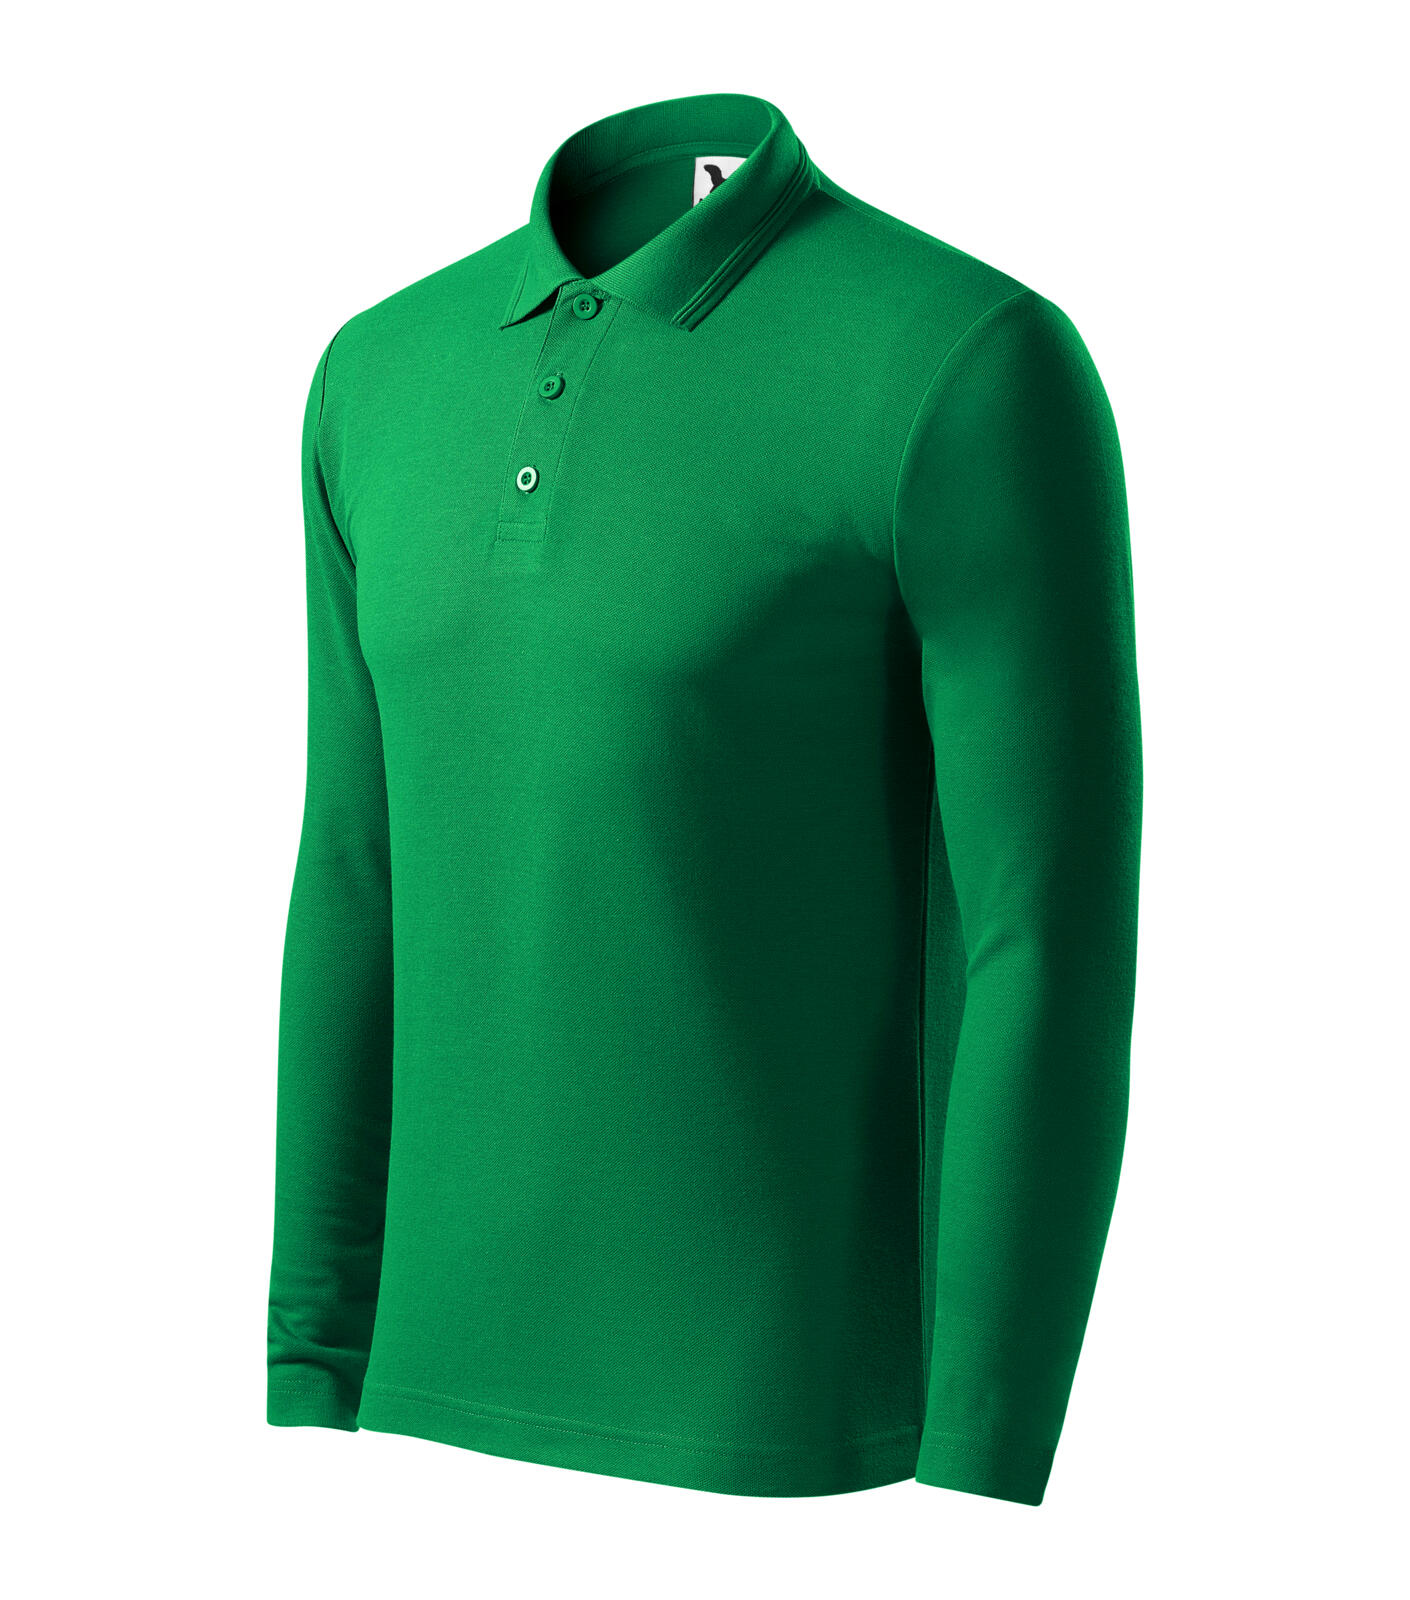 Pique Polo LS Polokošile pánská Barva: středně zelená, Velikost: 3XL